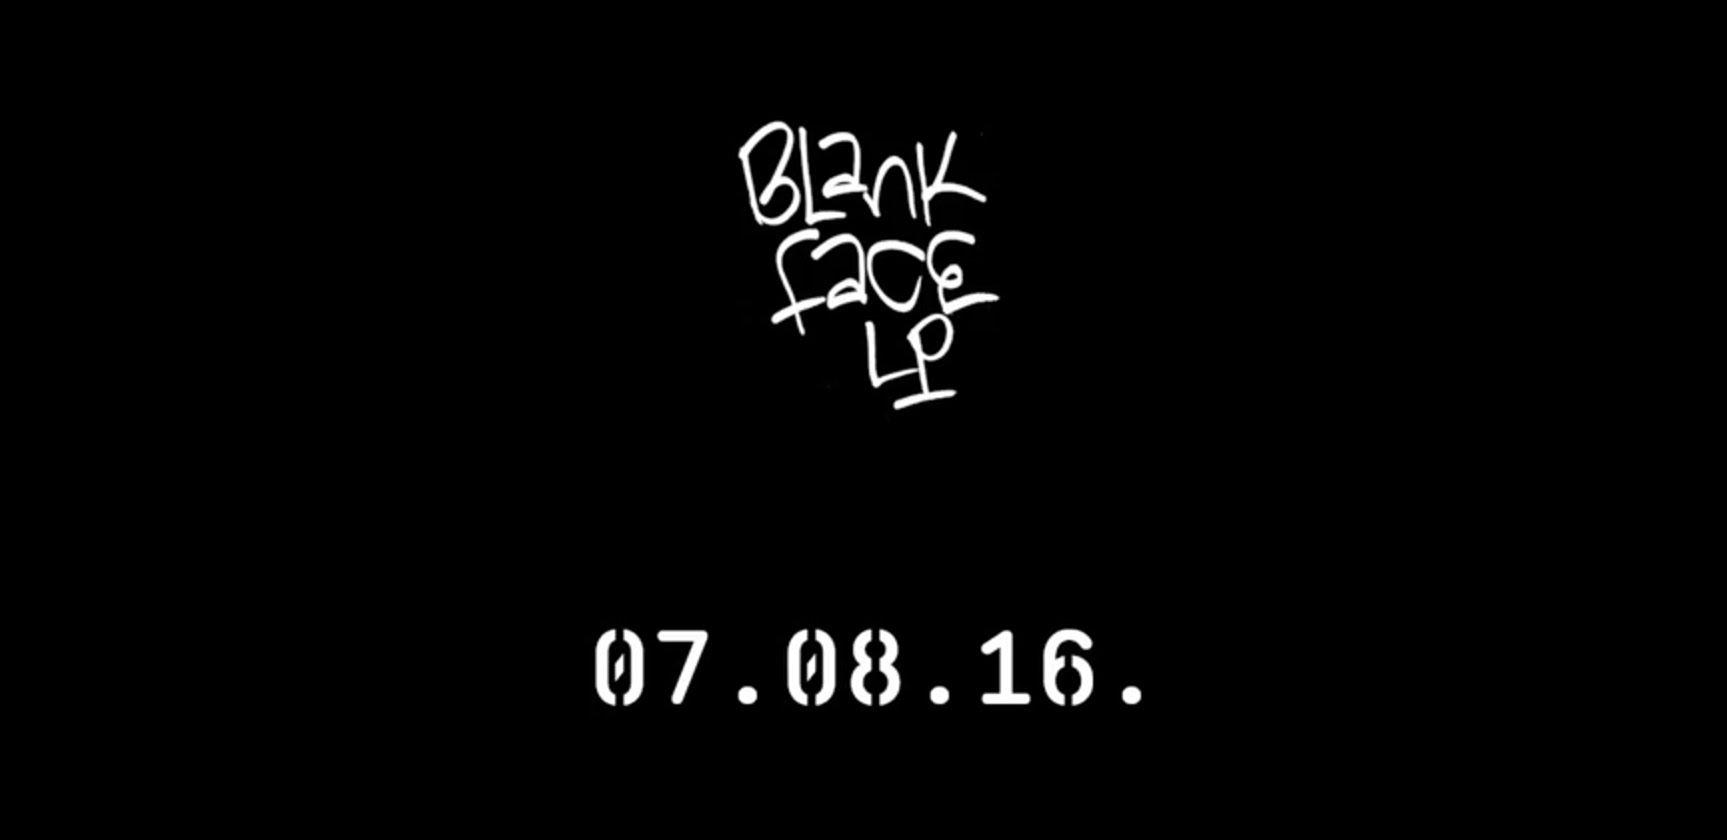 Blank Face Logo - Schoolboy Q 'Blank Face LP' (Teaser) - RealTalkHipHop